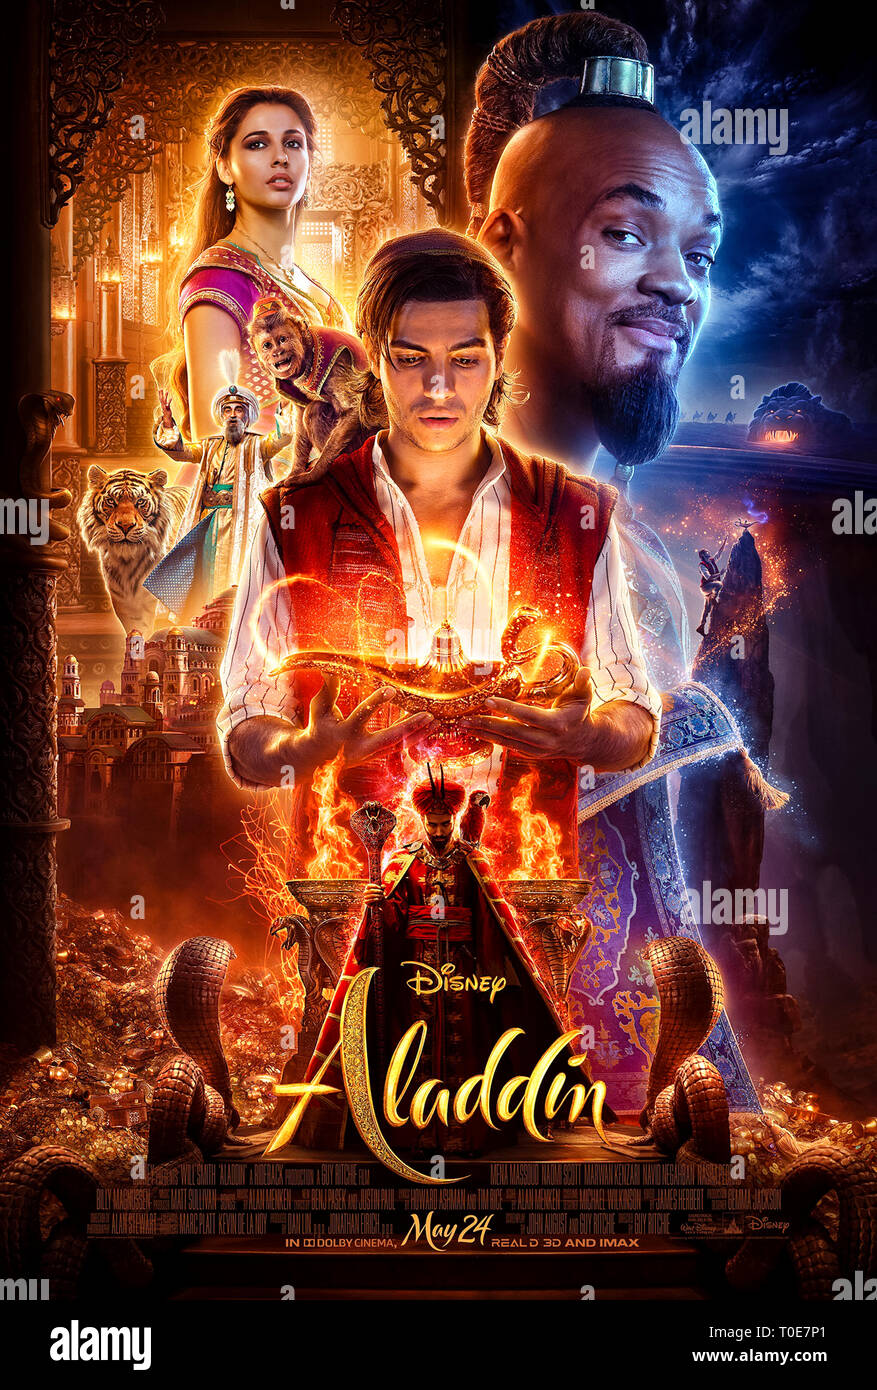 Aladdin (2019) diretto da Guy Ritchie e interpretato da Naomi Scott, Mena Massoud, Will Smith. Remake live action del classico cartone animato Disney. Poster US One sheet ***SOLO PER USO EDITORIALE***. Credito: BFA / Walt Disney Foto Stock